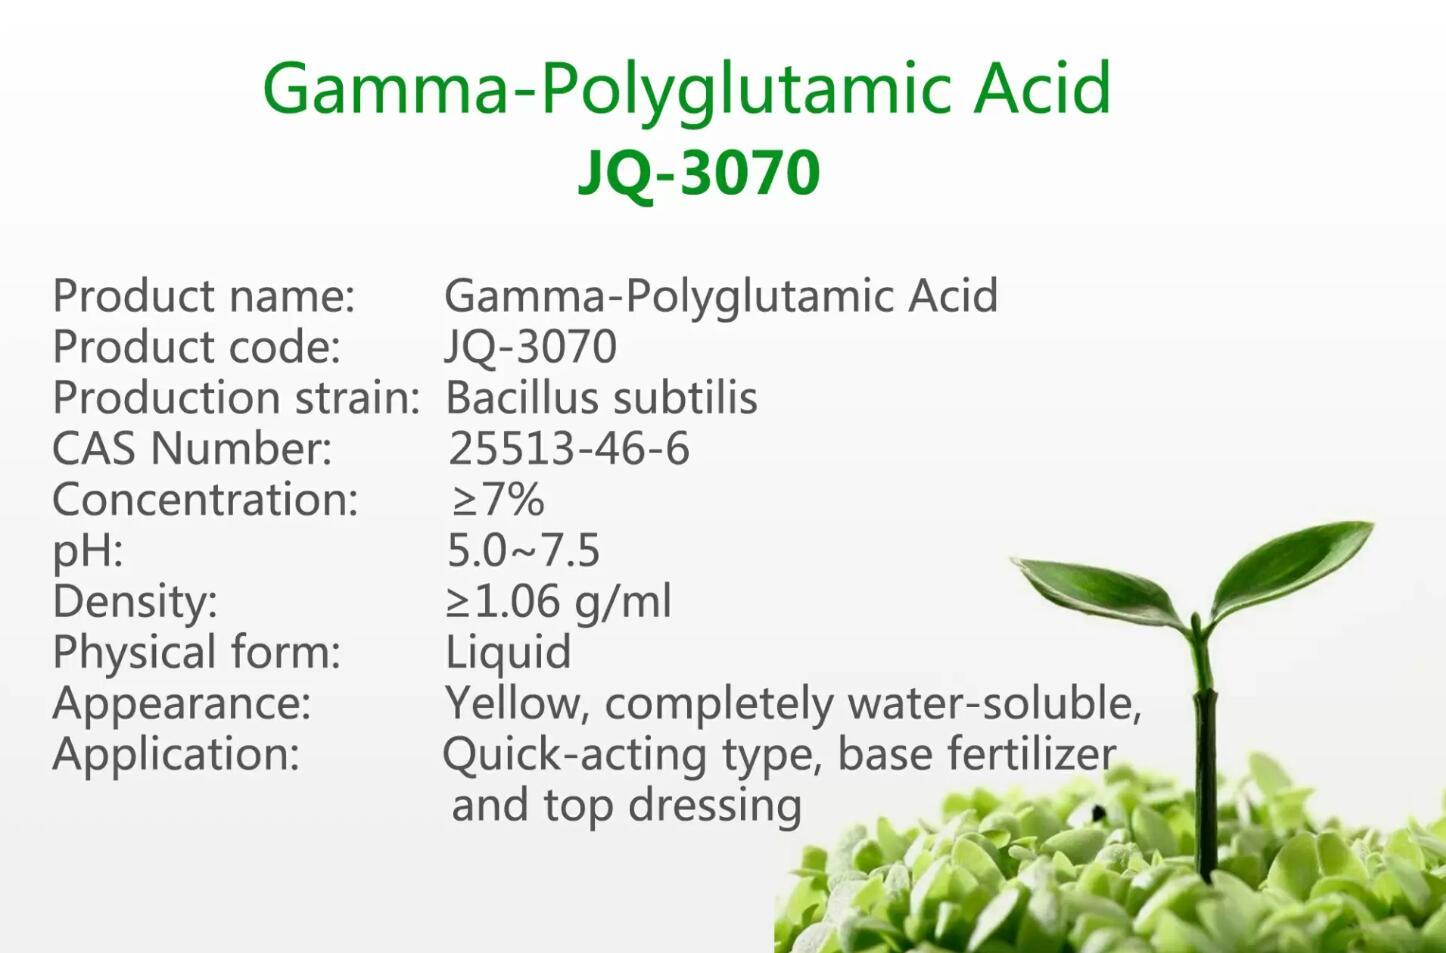 γ-Polyglutamic Acid JQ-3070